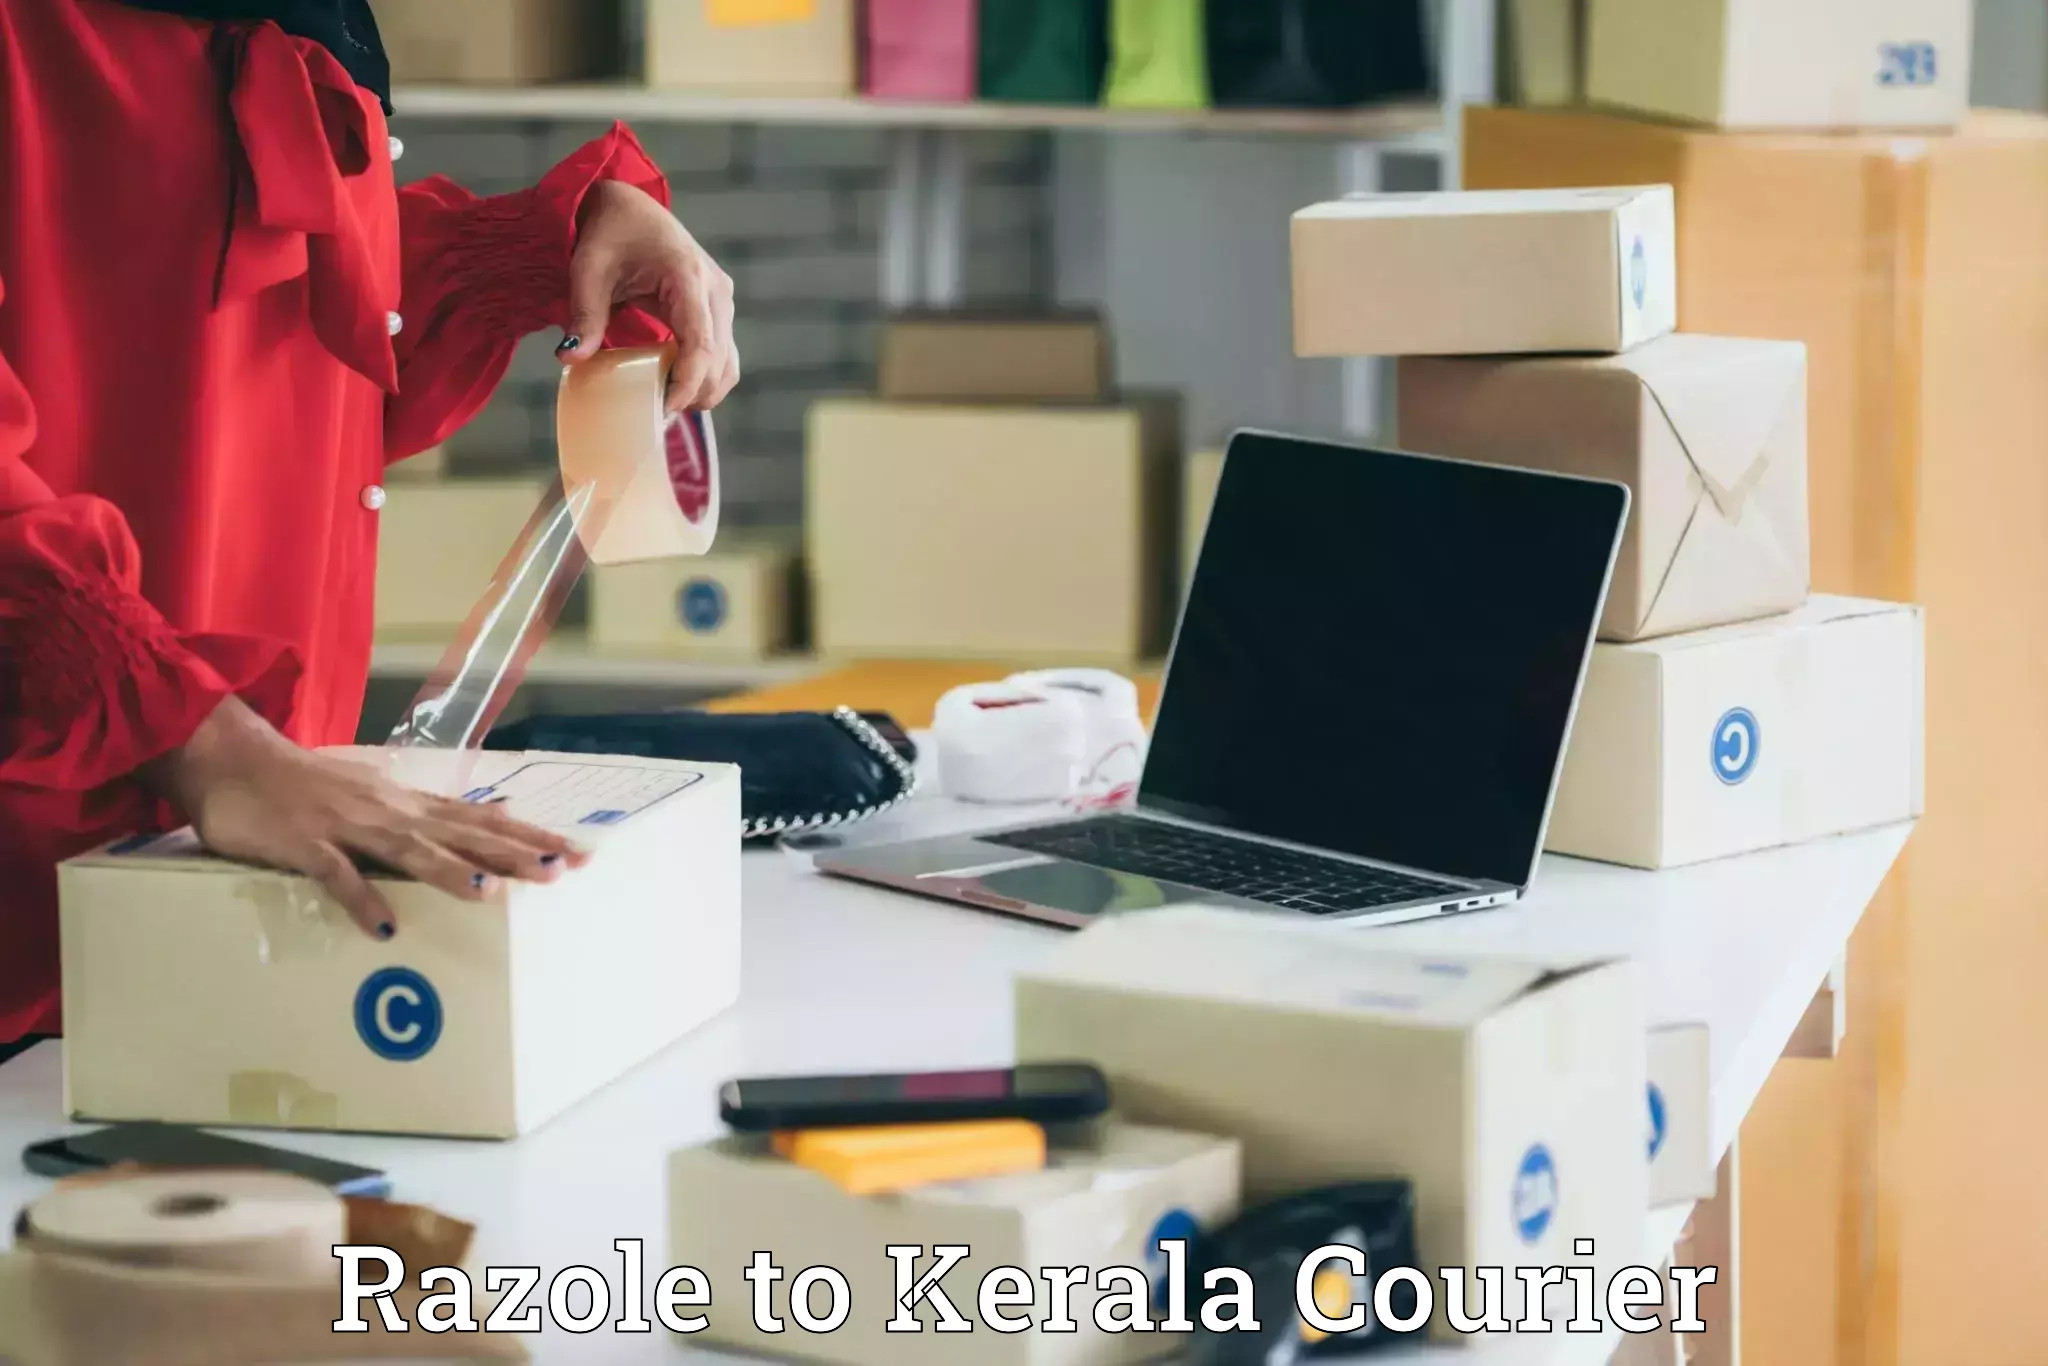 Urgent luggage shipment Razole to Kerala